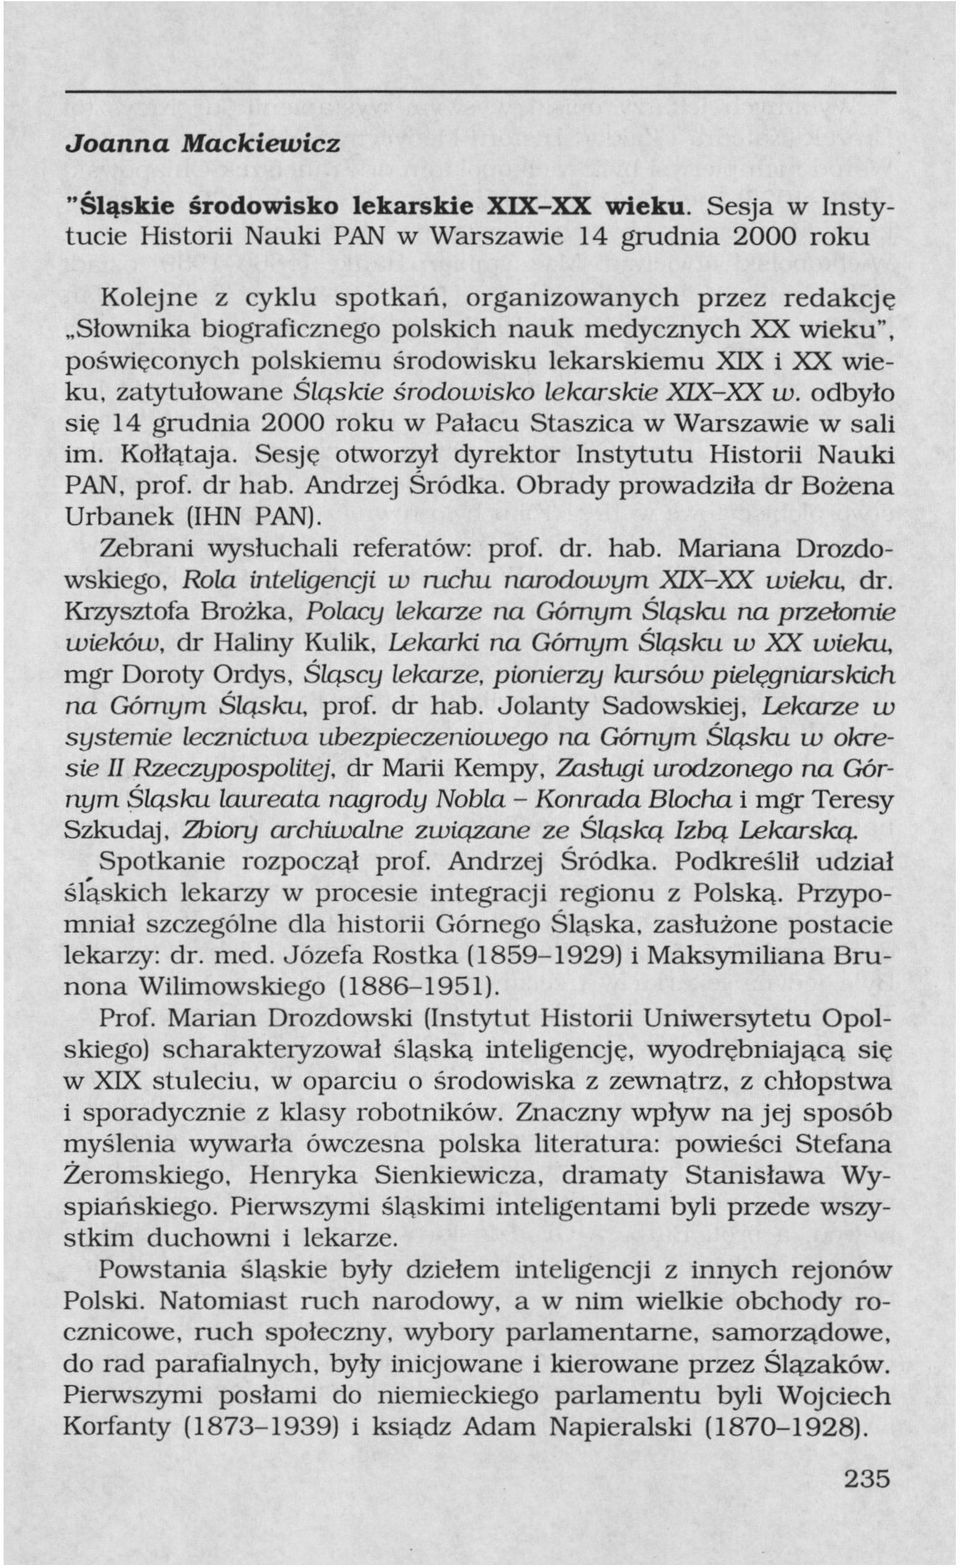 polskiemu środowisku lekarskiemu XIX i XX wieku, zatytułowane Śląskie środowisko lekarskie XIX-XX w. odbyło się 14 grudnia 2000 roku w Pałacu Staszica w Warszawie w sali im. Kołłątaja.